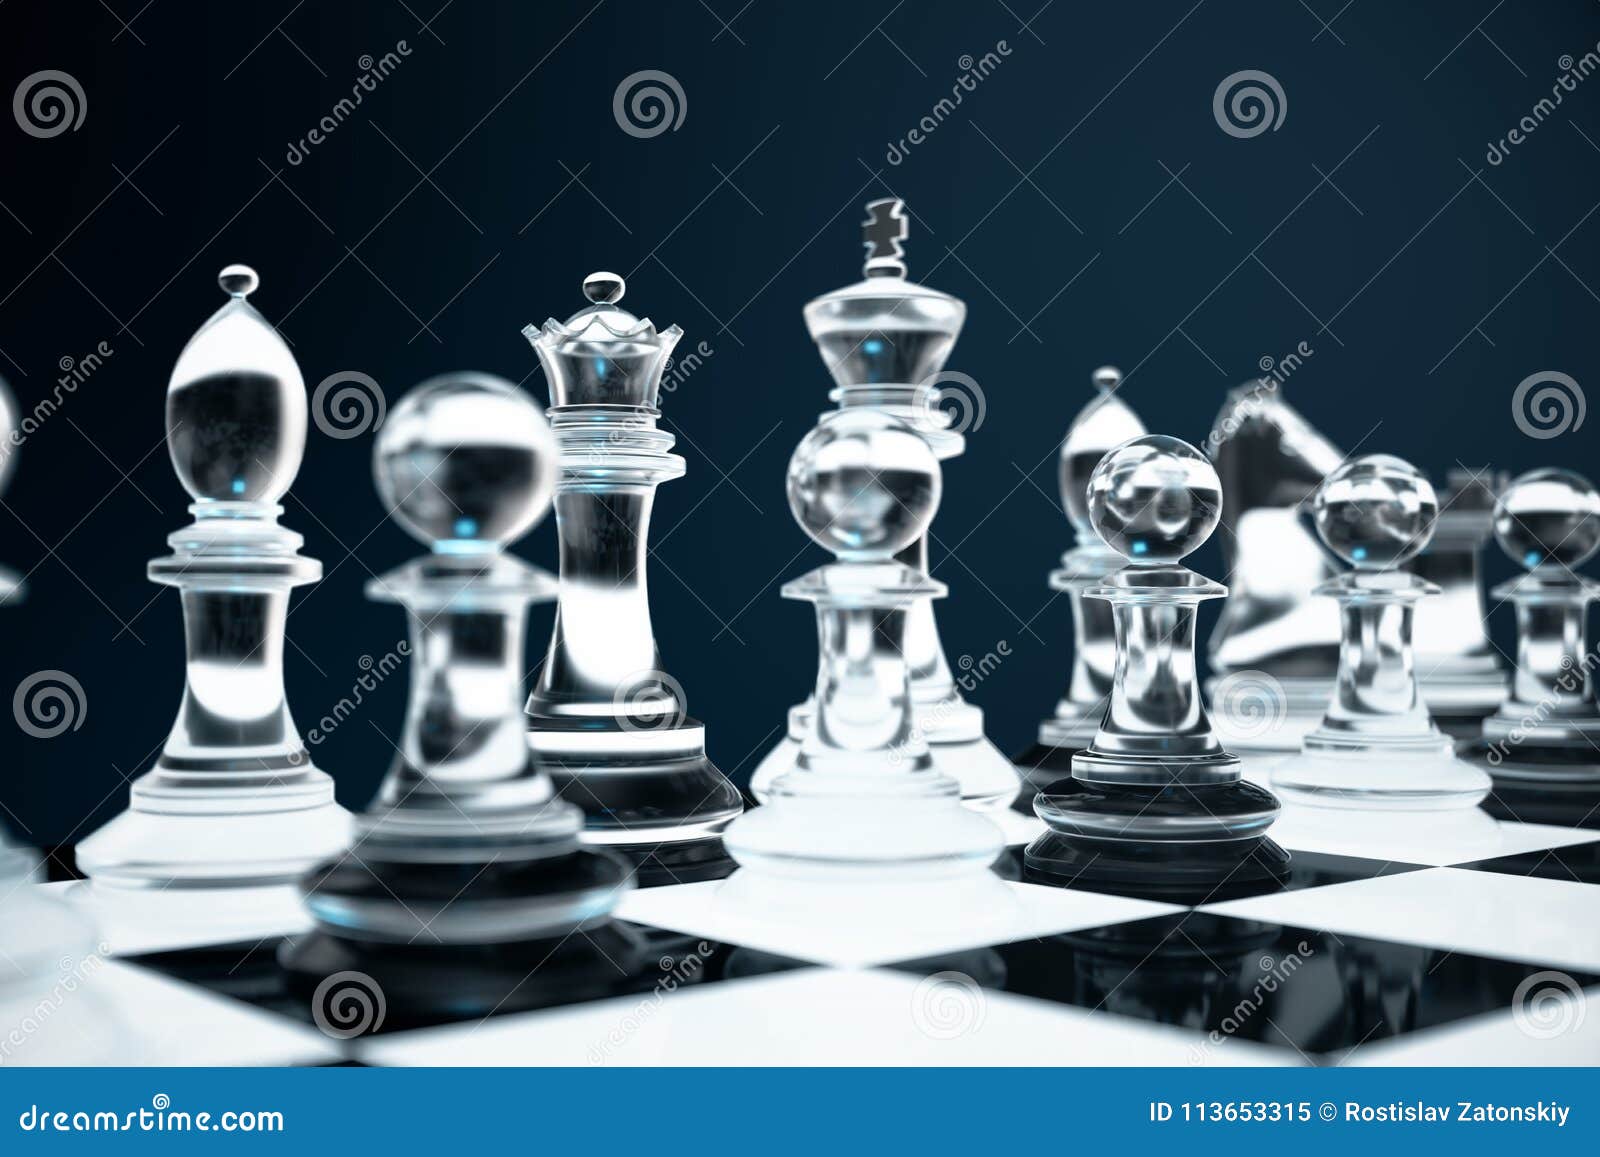 Peão de peças de xadrez consistindo de pontos, linhas e formas